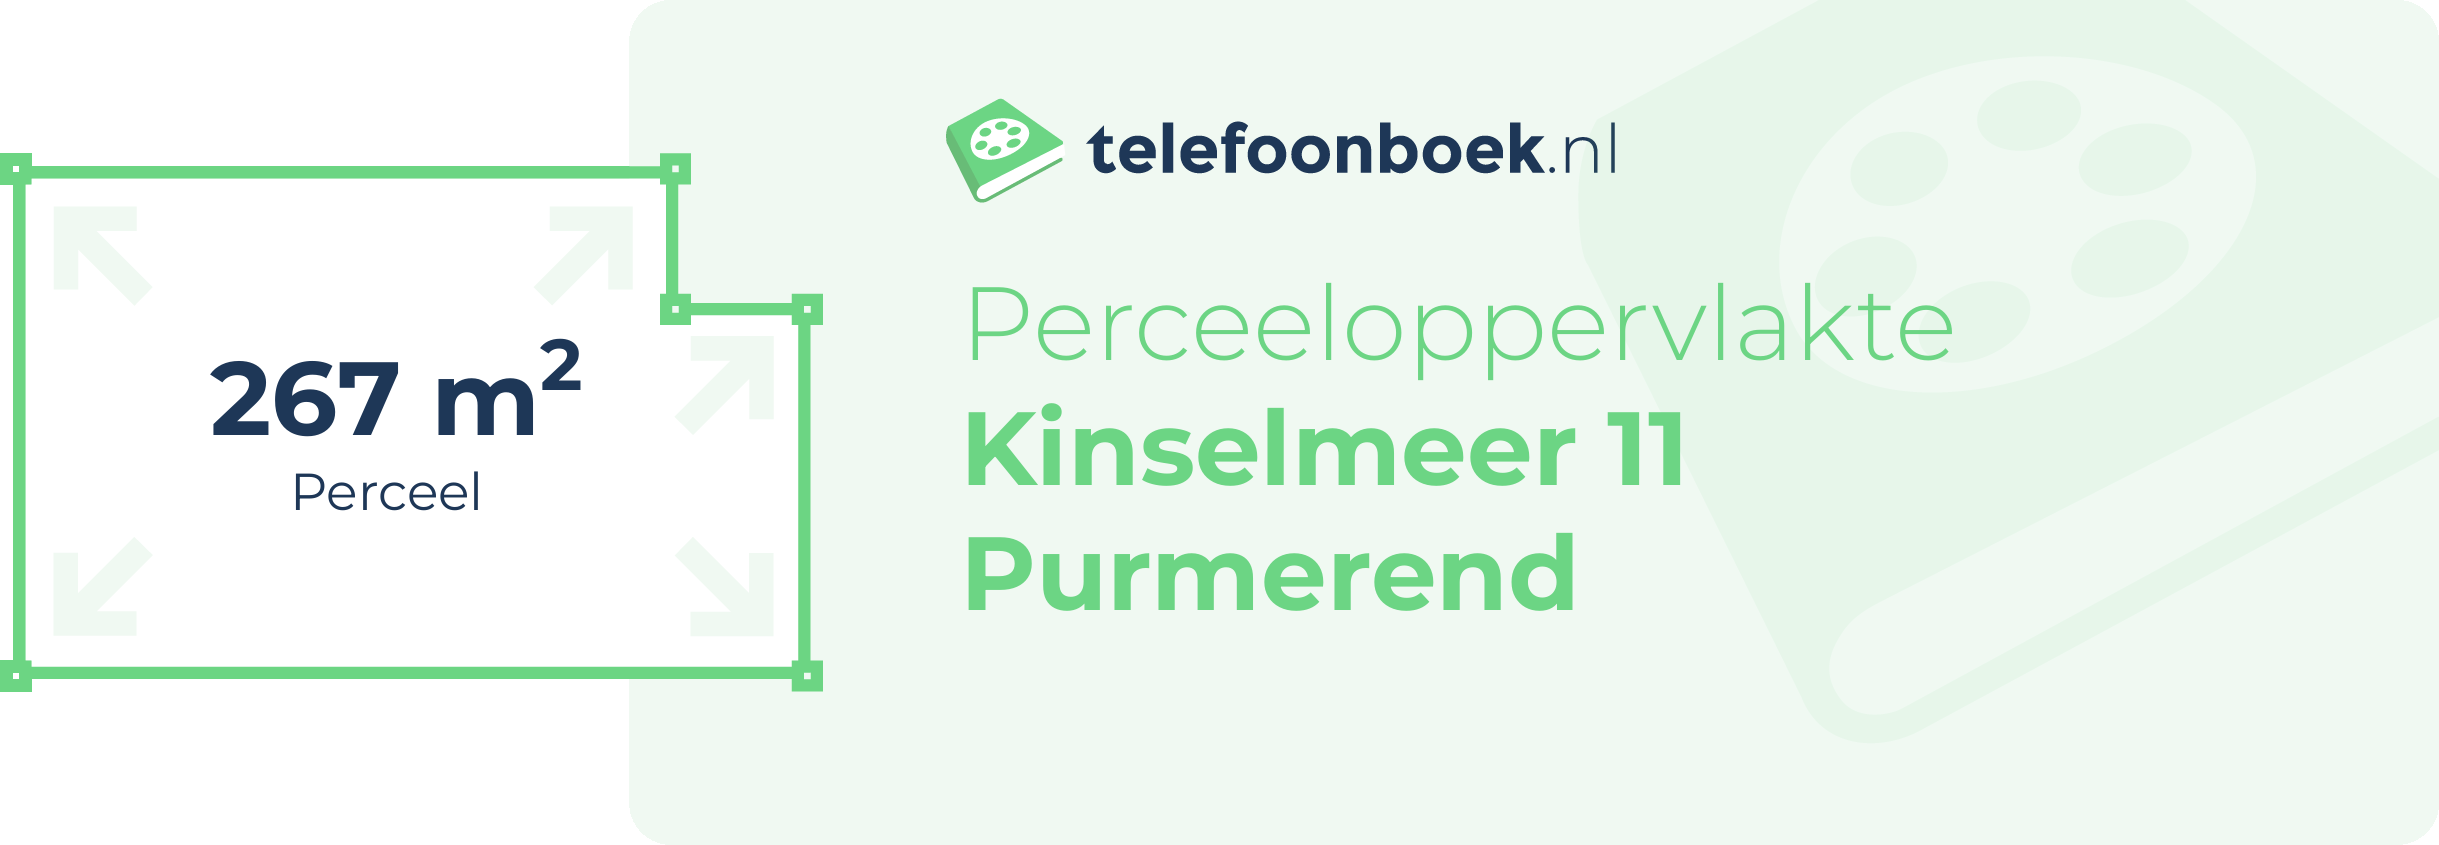 Perceeloppervlakte Kinselmeer 11 Purmerend